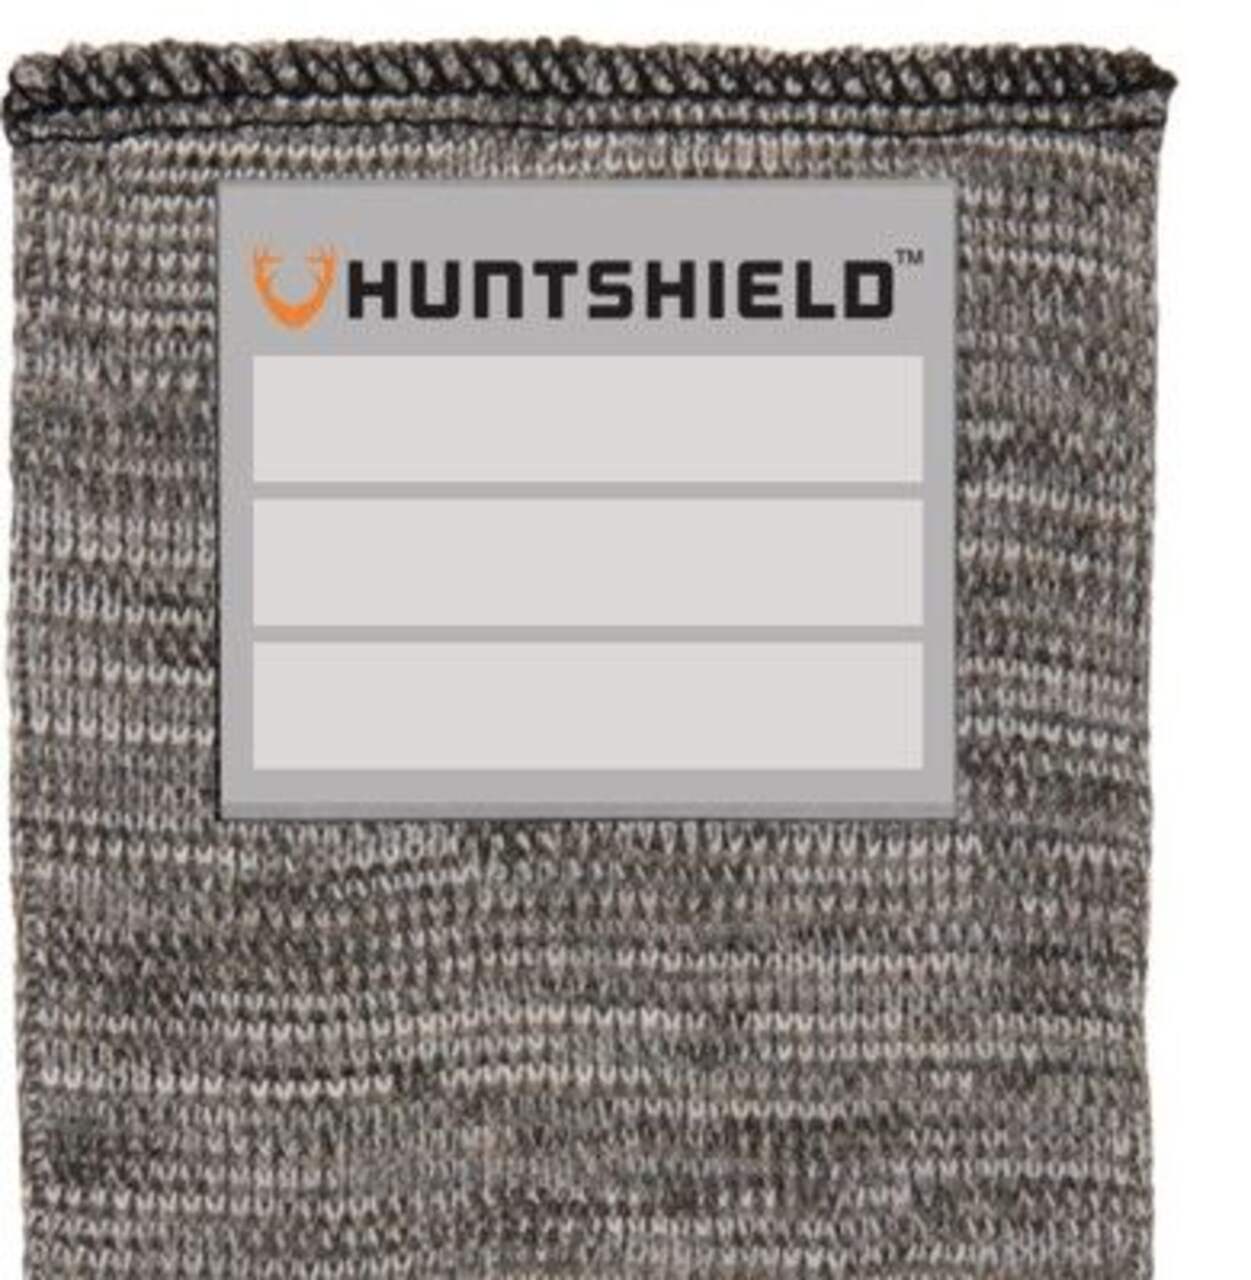 Gaine pour fusil HuntShield avec étiquette d'identification